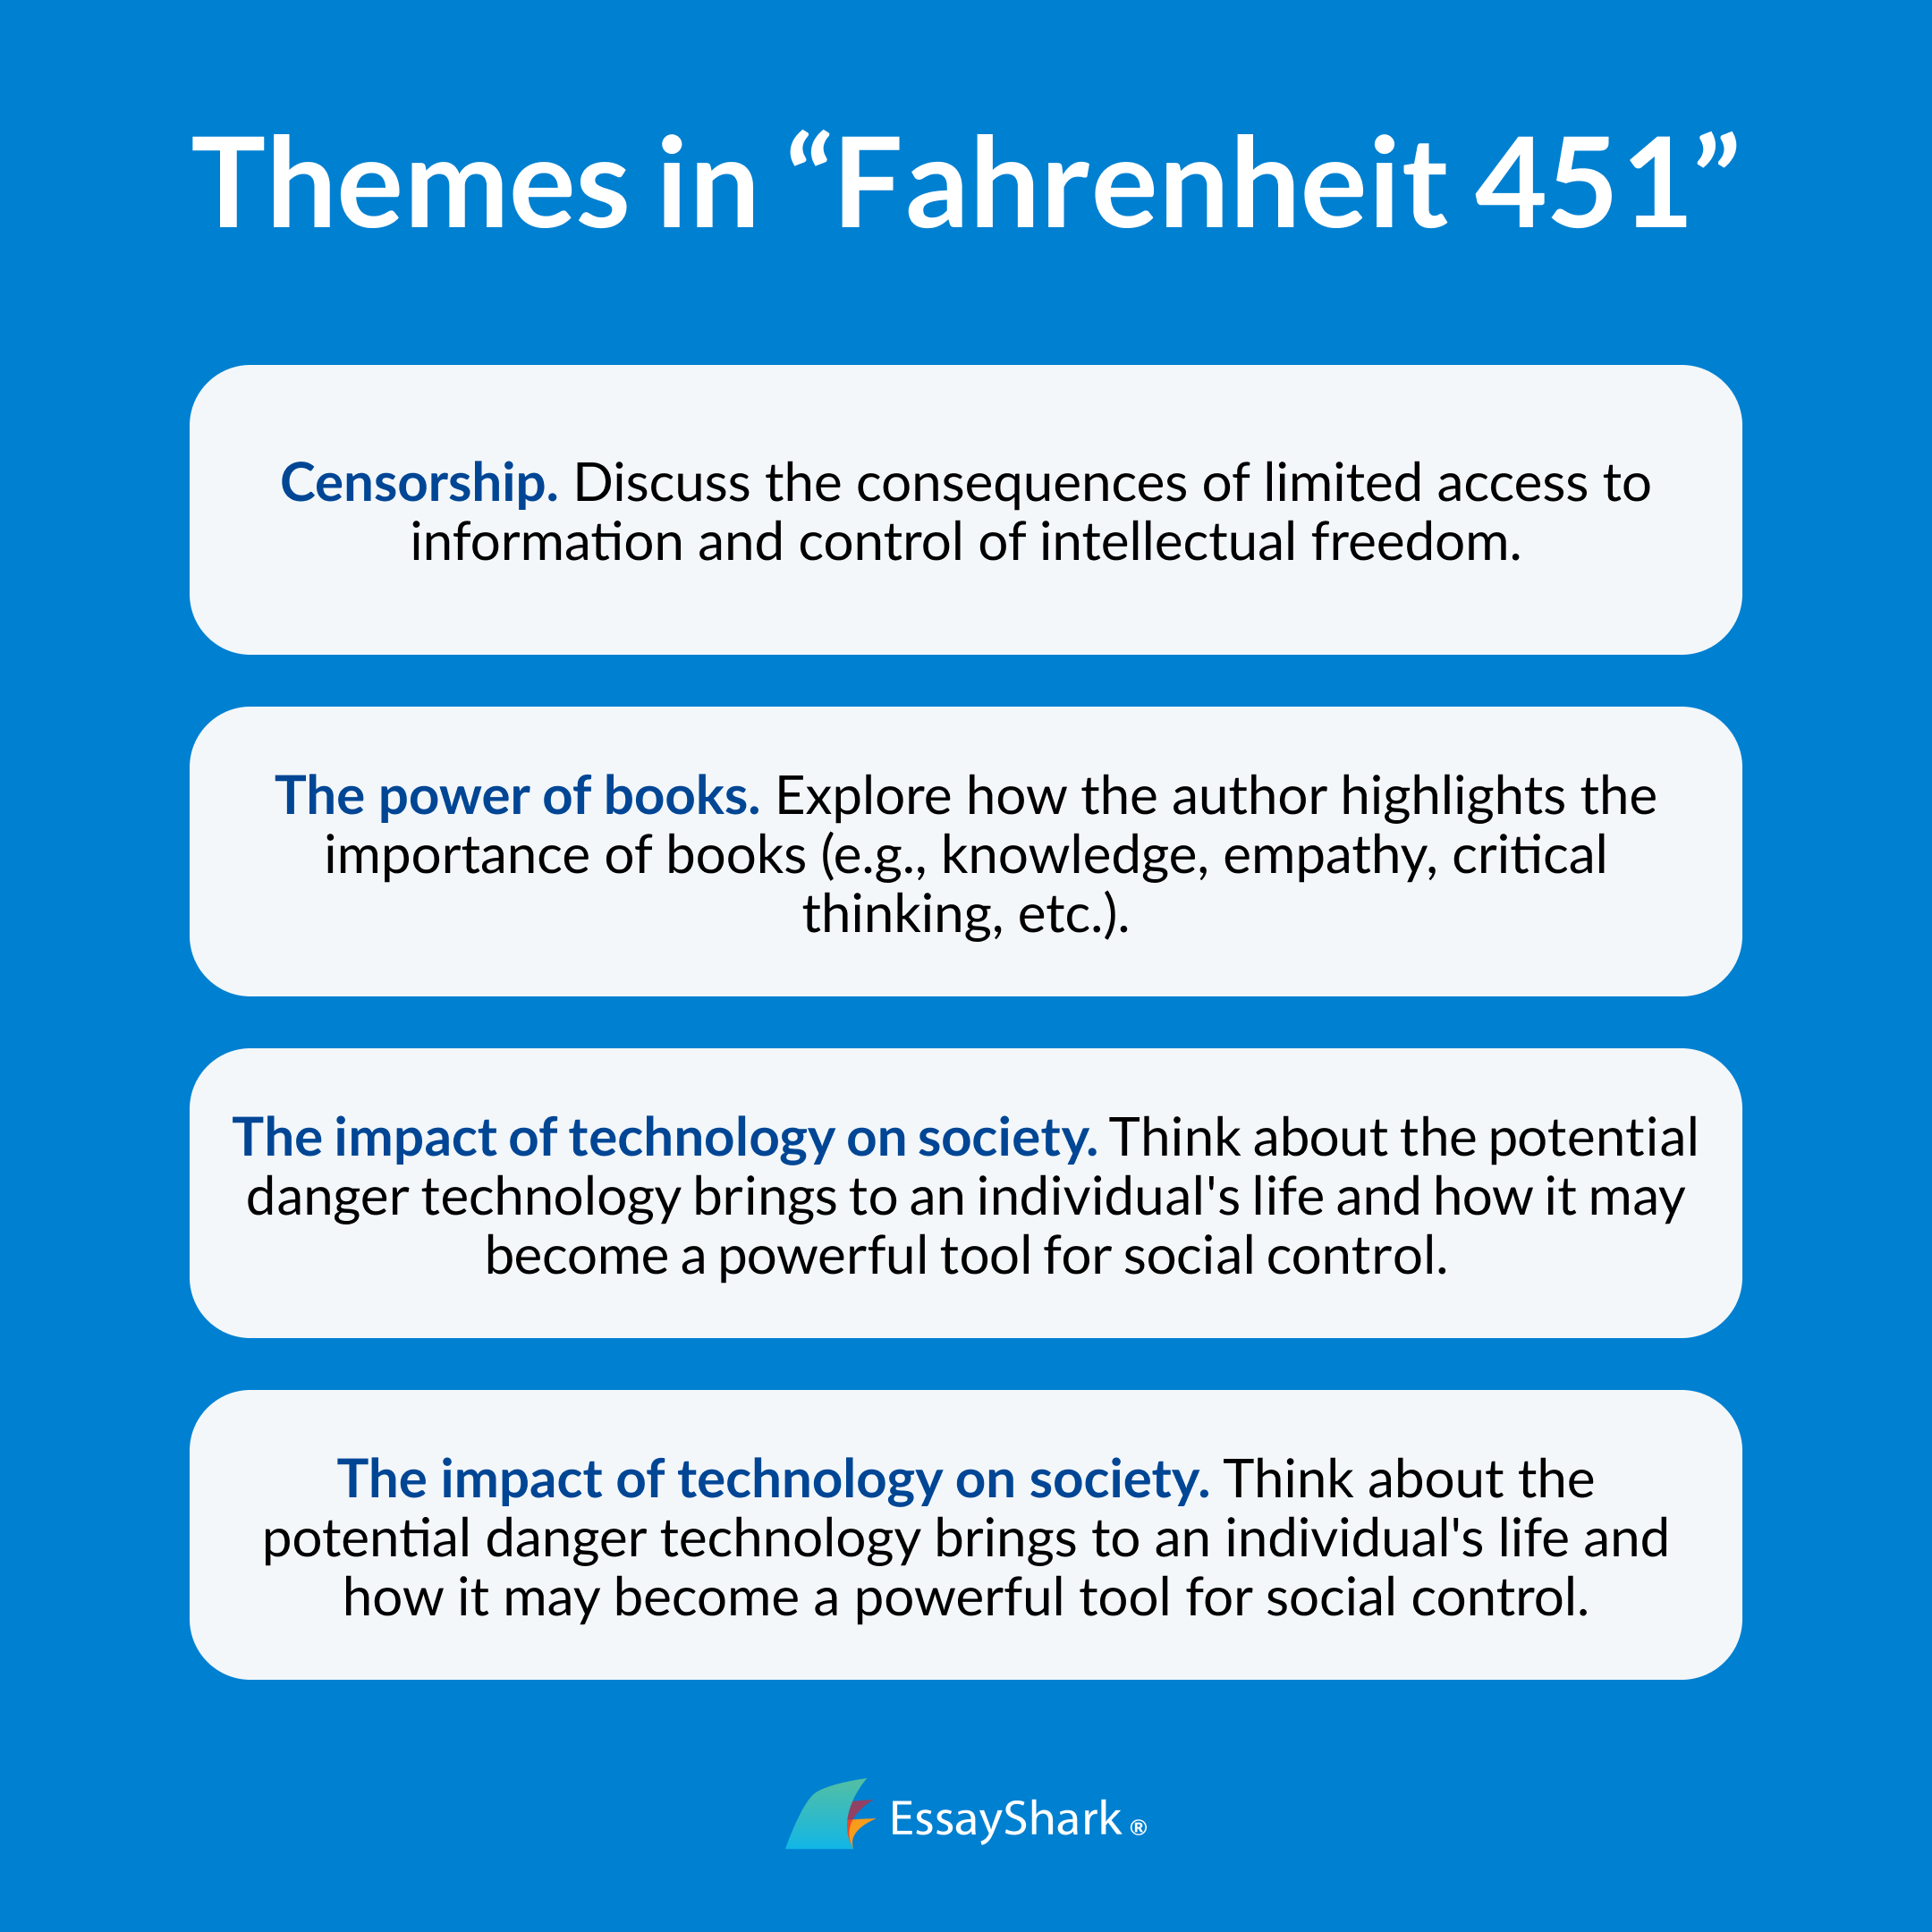 Fahrenheit 451 main themes